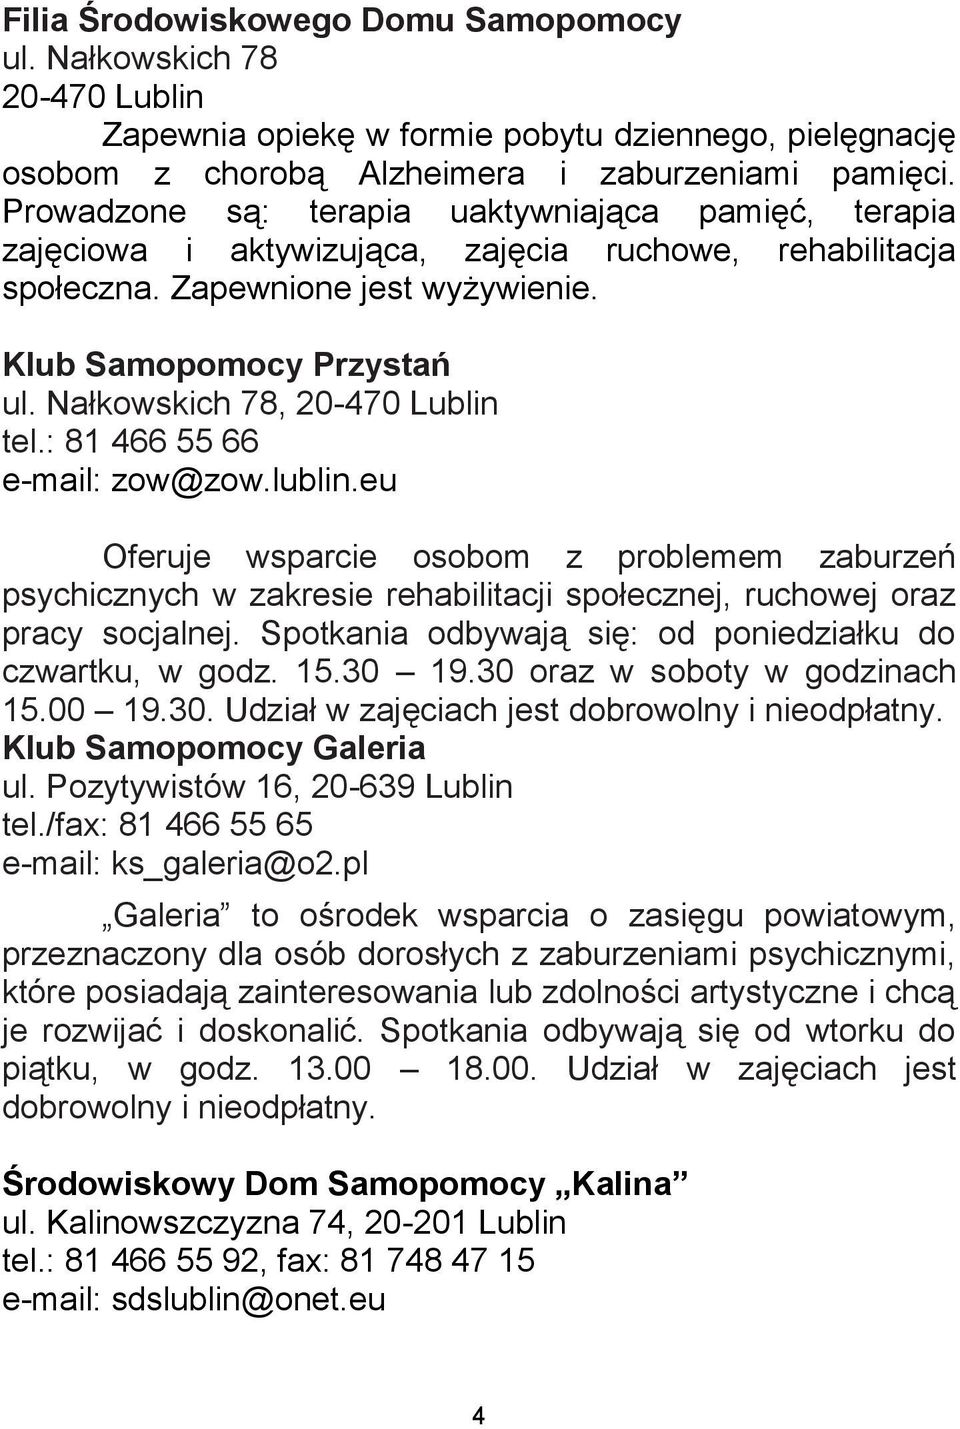 Nałkowskich 78, 20-470 Lublin tel.: 81 466 55 66 e-mail: zow@zow.lublin.eu Oferuje wsparcie osobom z problemem zaburzeń psychicznych w zakresie rehabilitacji społecznej, ruchowej oraz pracy socjalnej.